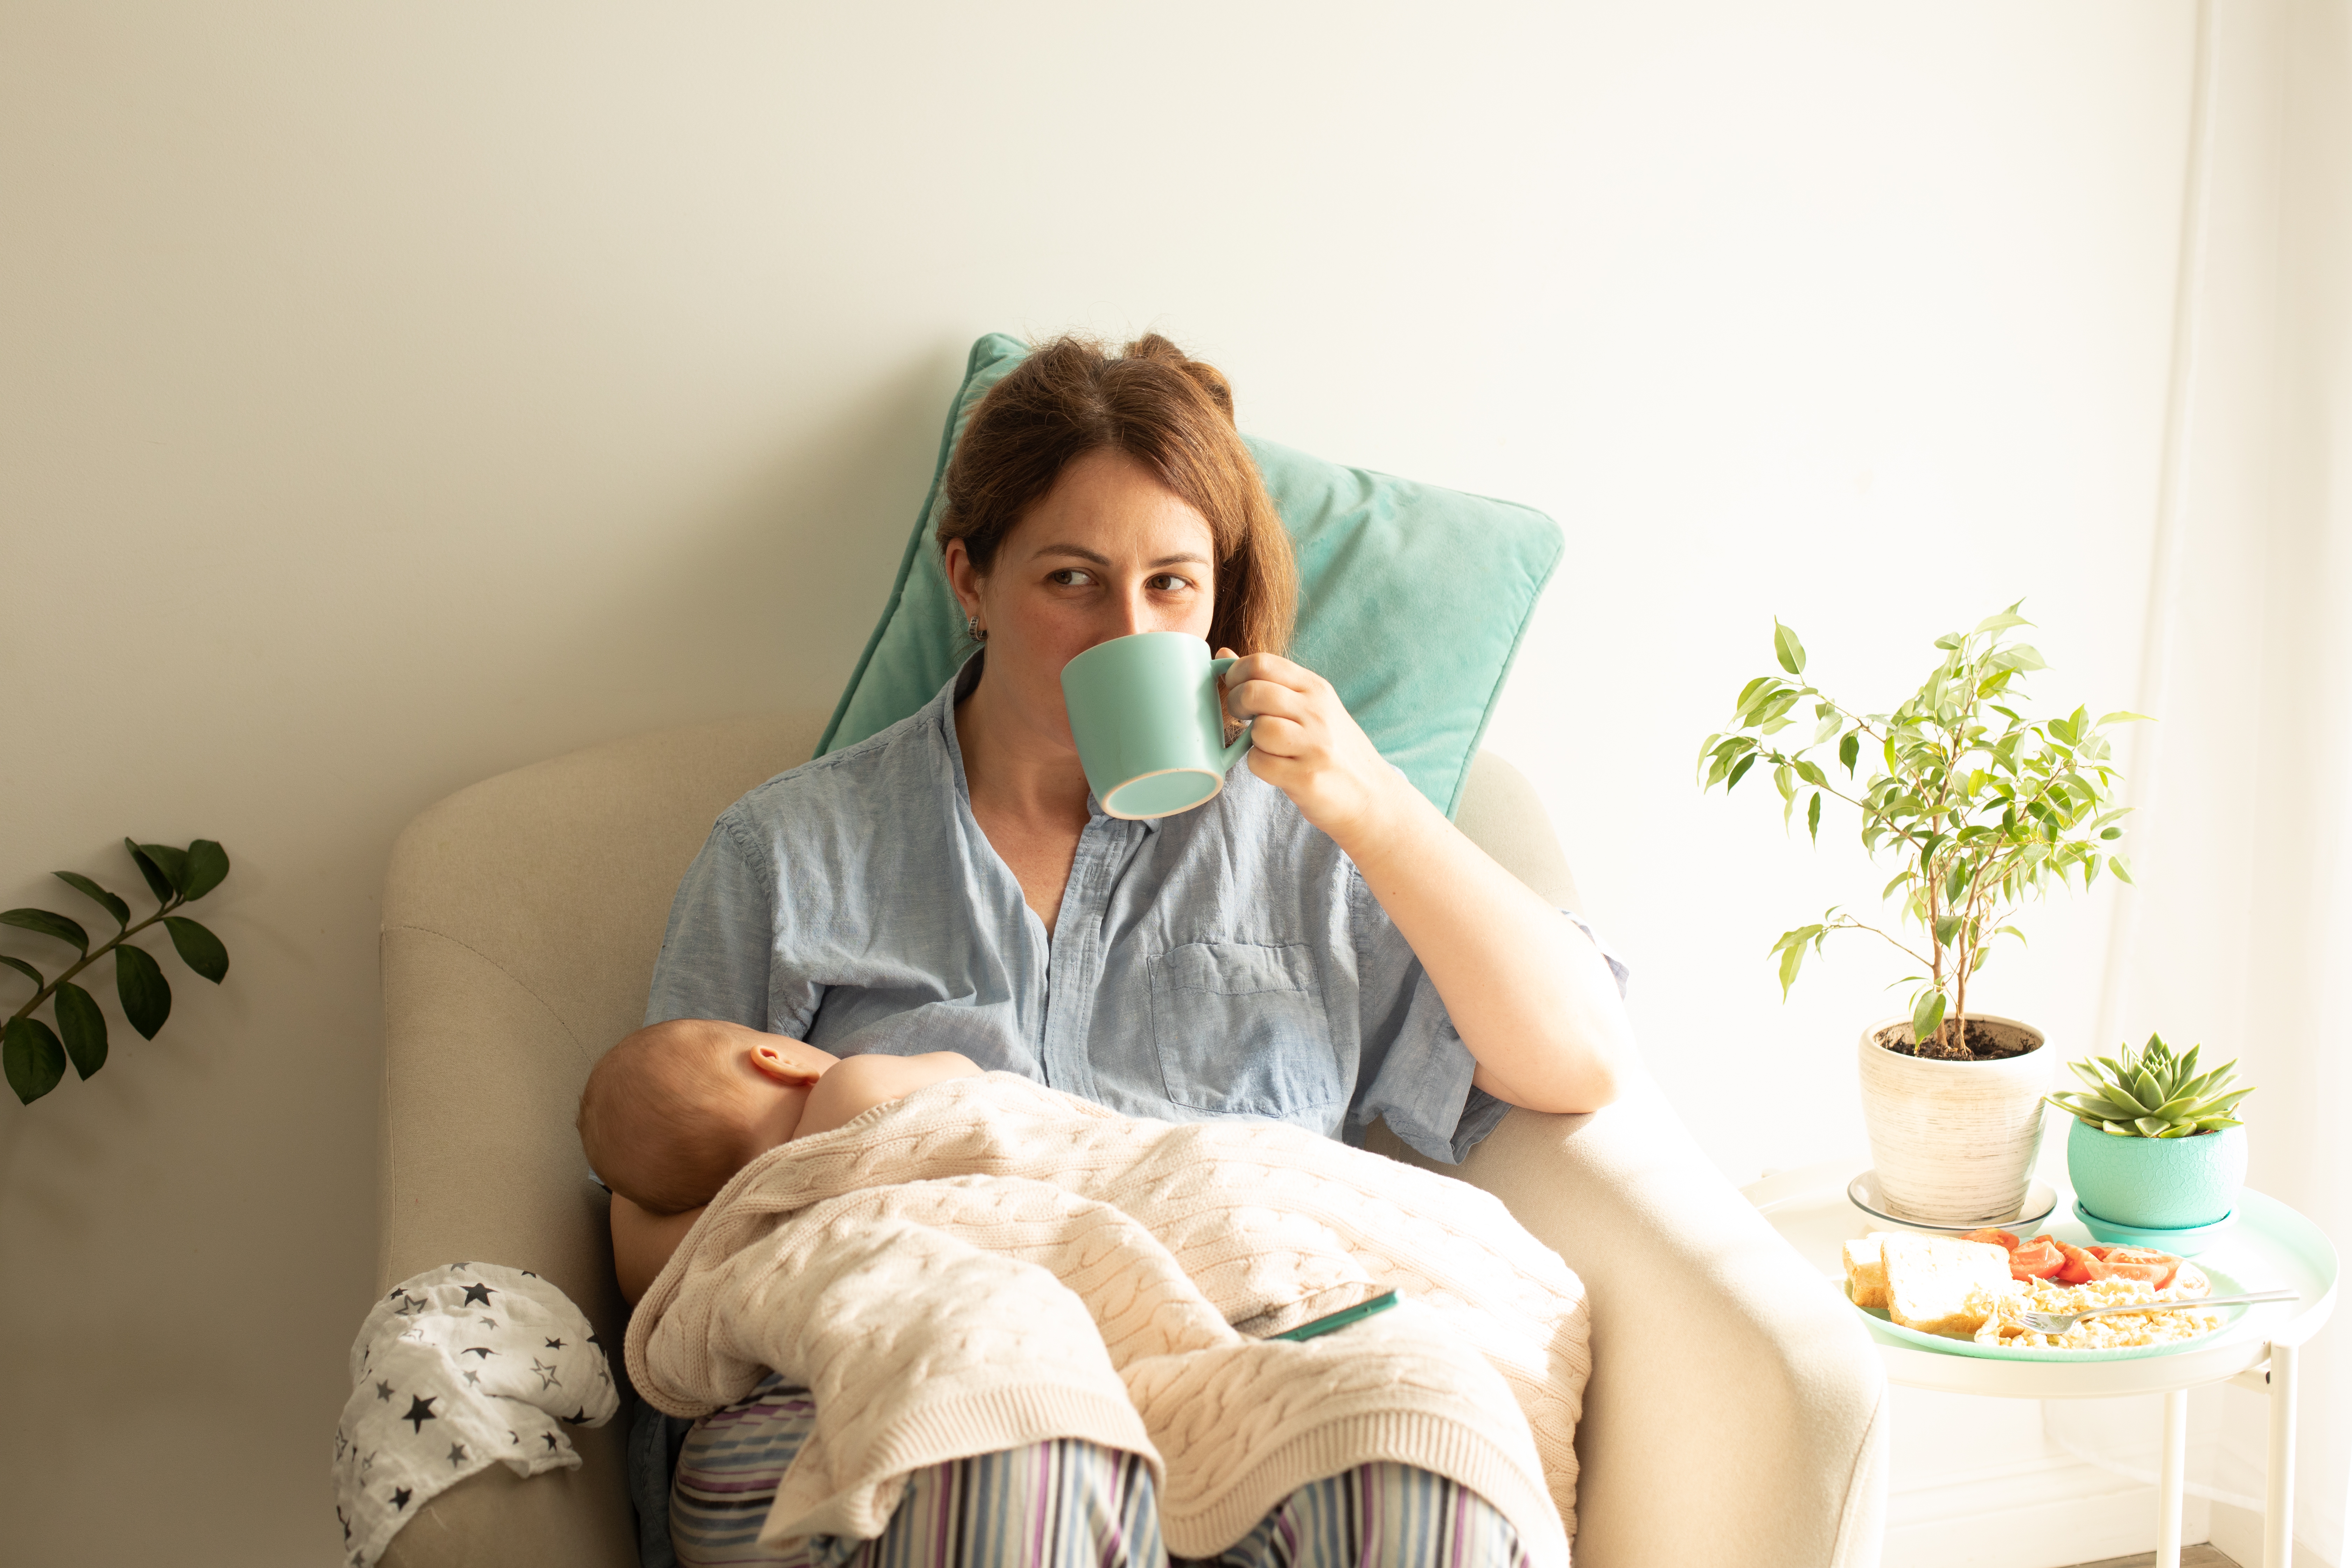 Eine Frau, die ihr Neugeborenes stillt, während sie Tee trinkt | Quelle: Shutterstock